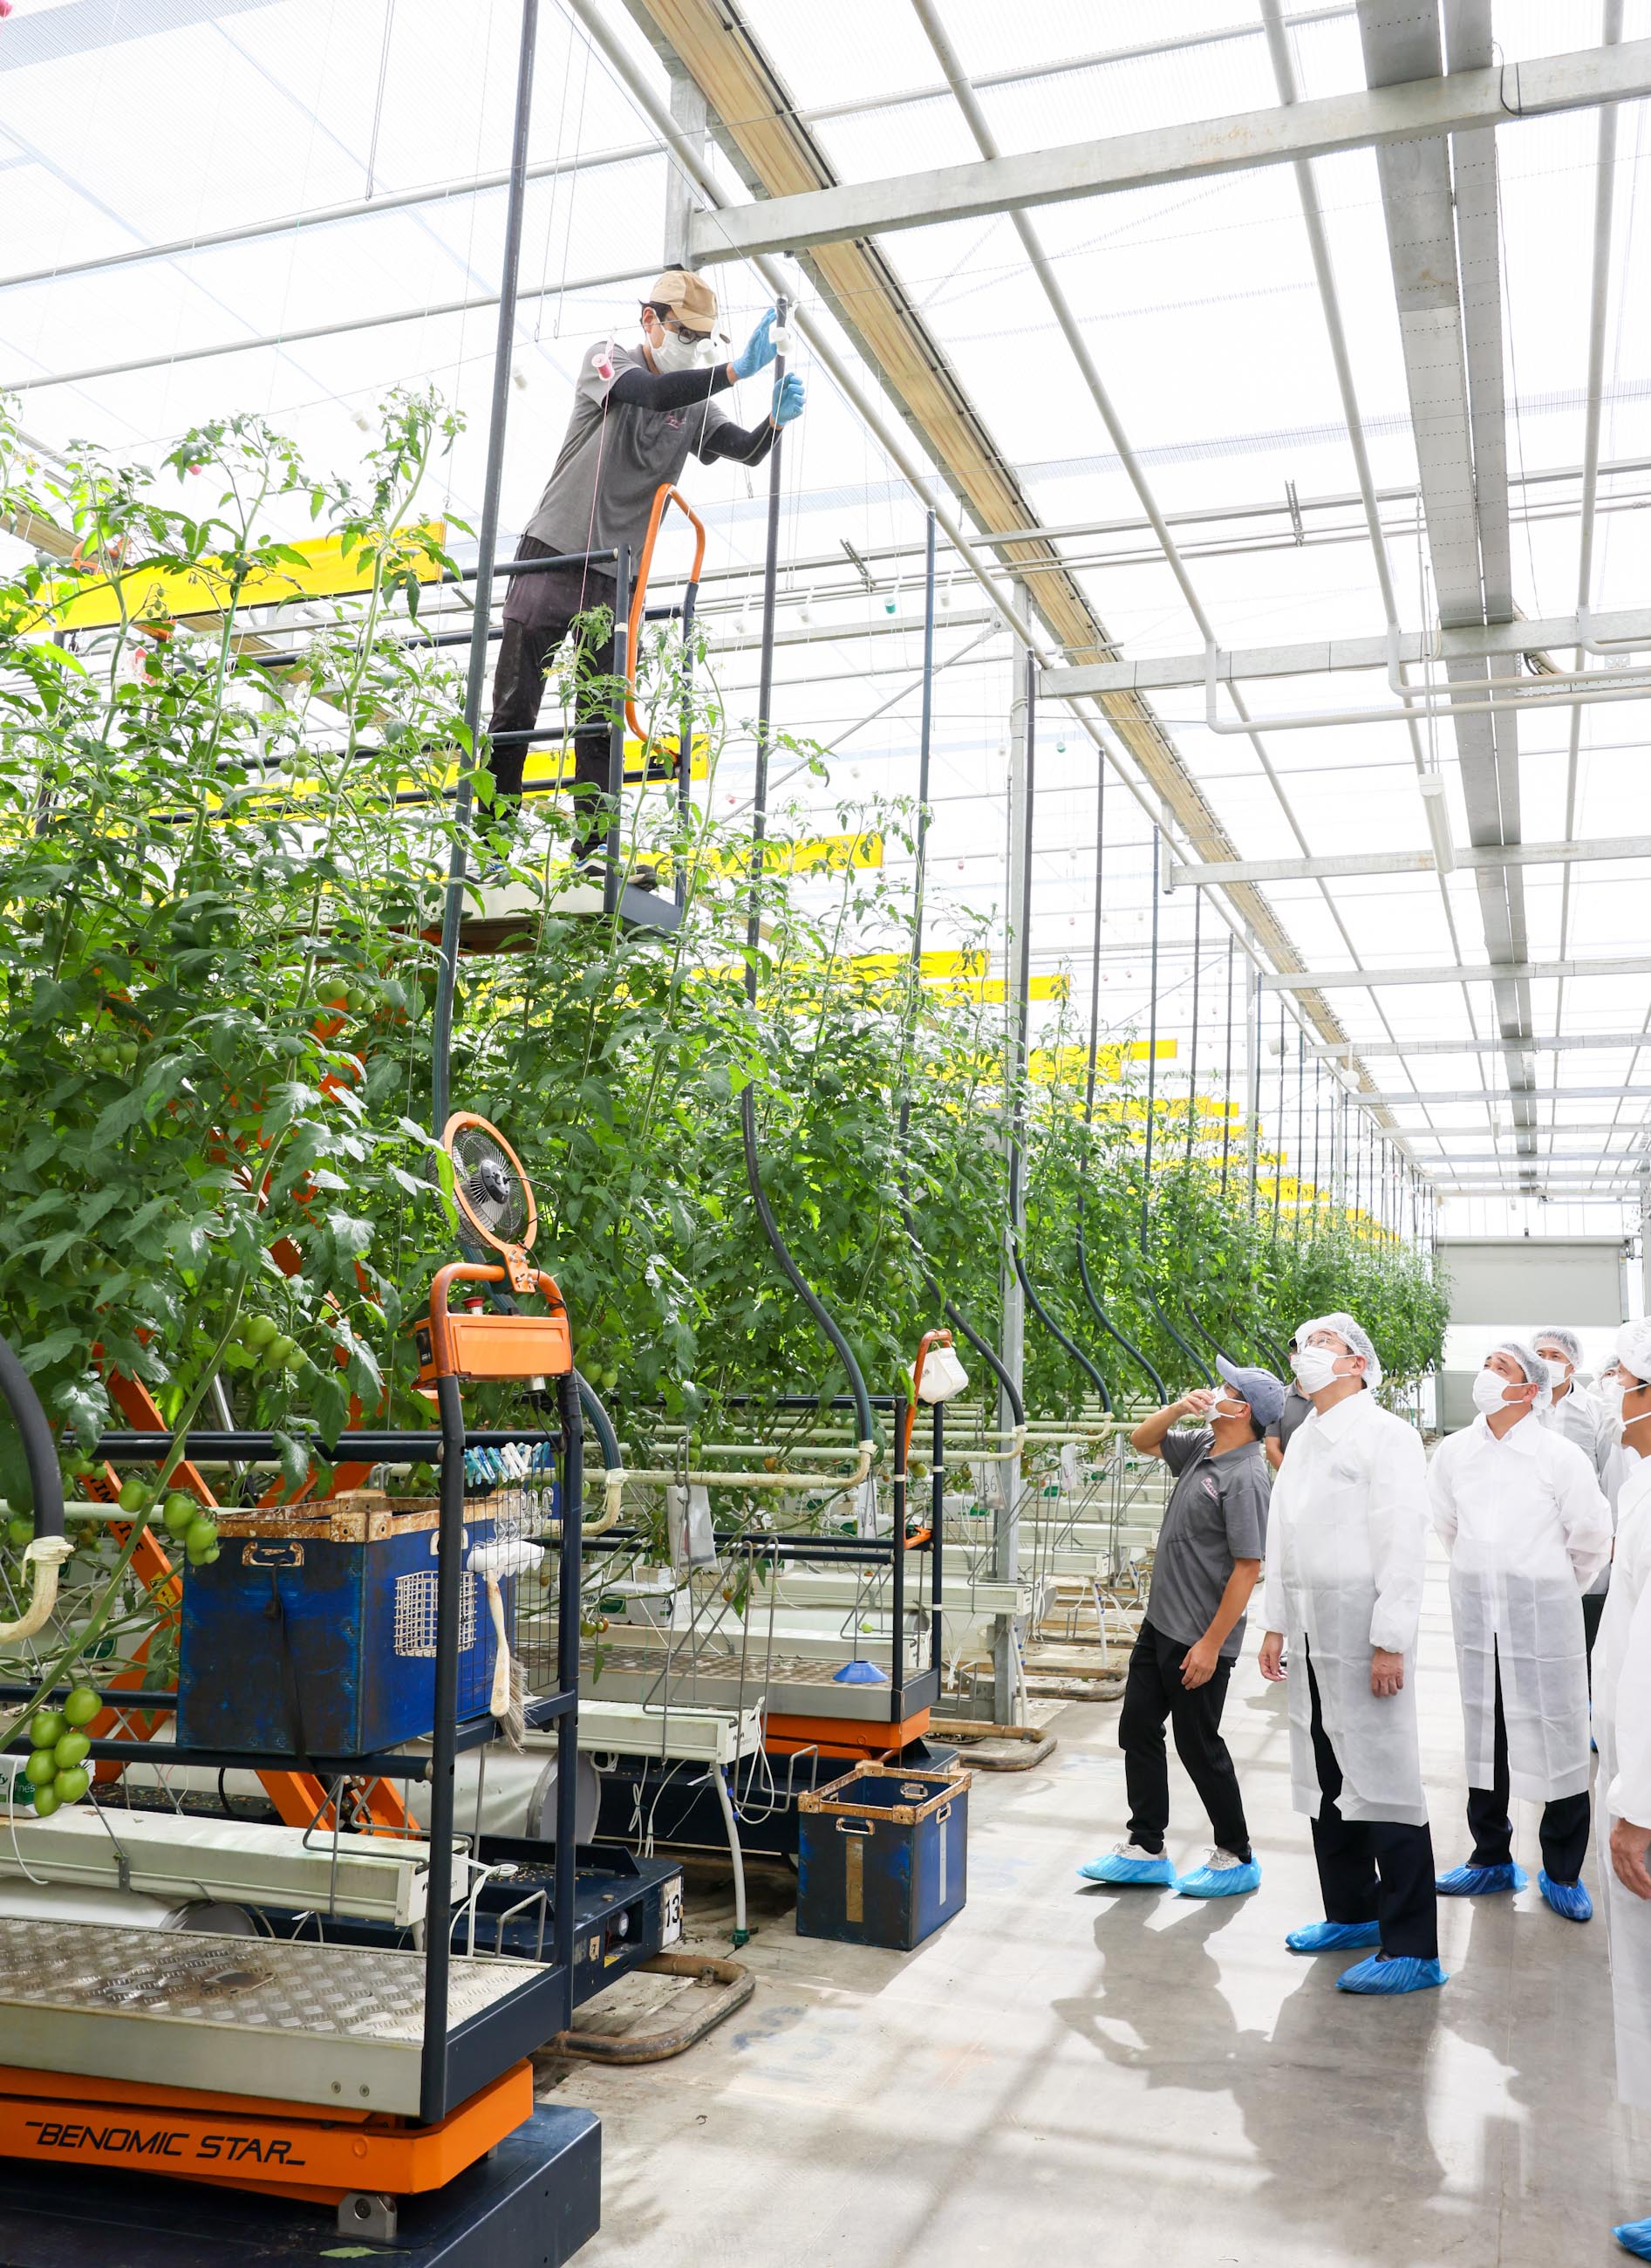 岸田首相视察一家栽培番茄的企业3